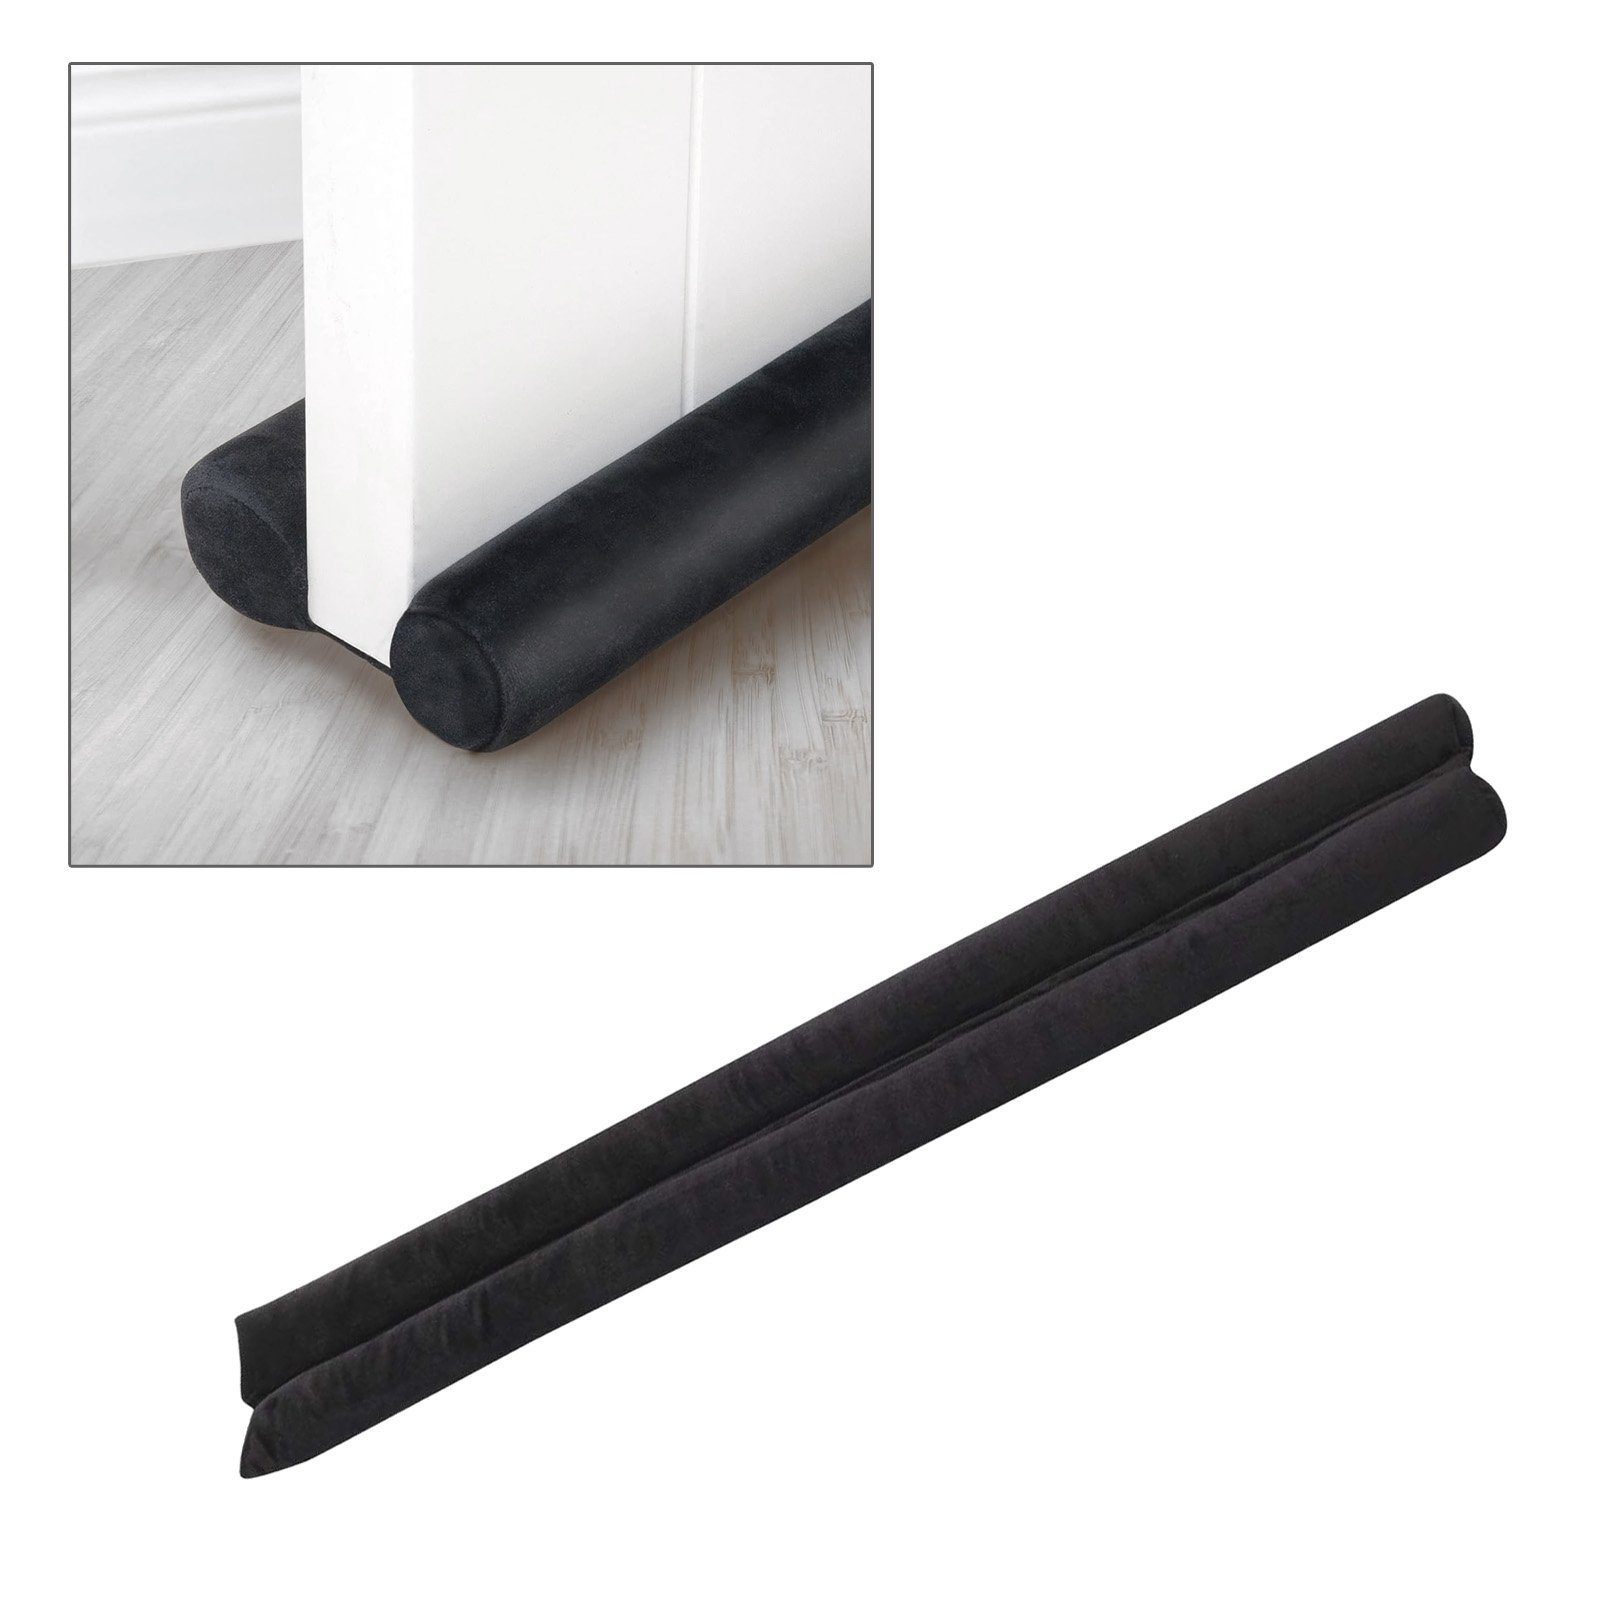 2x Zugluftstopper für Tür und Fenster - Microfaser Windstopper- taupe/grau